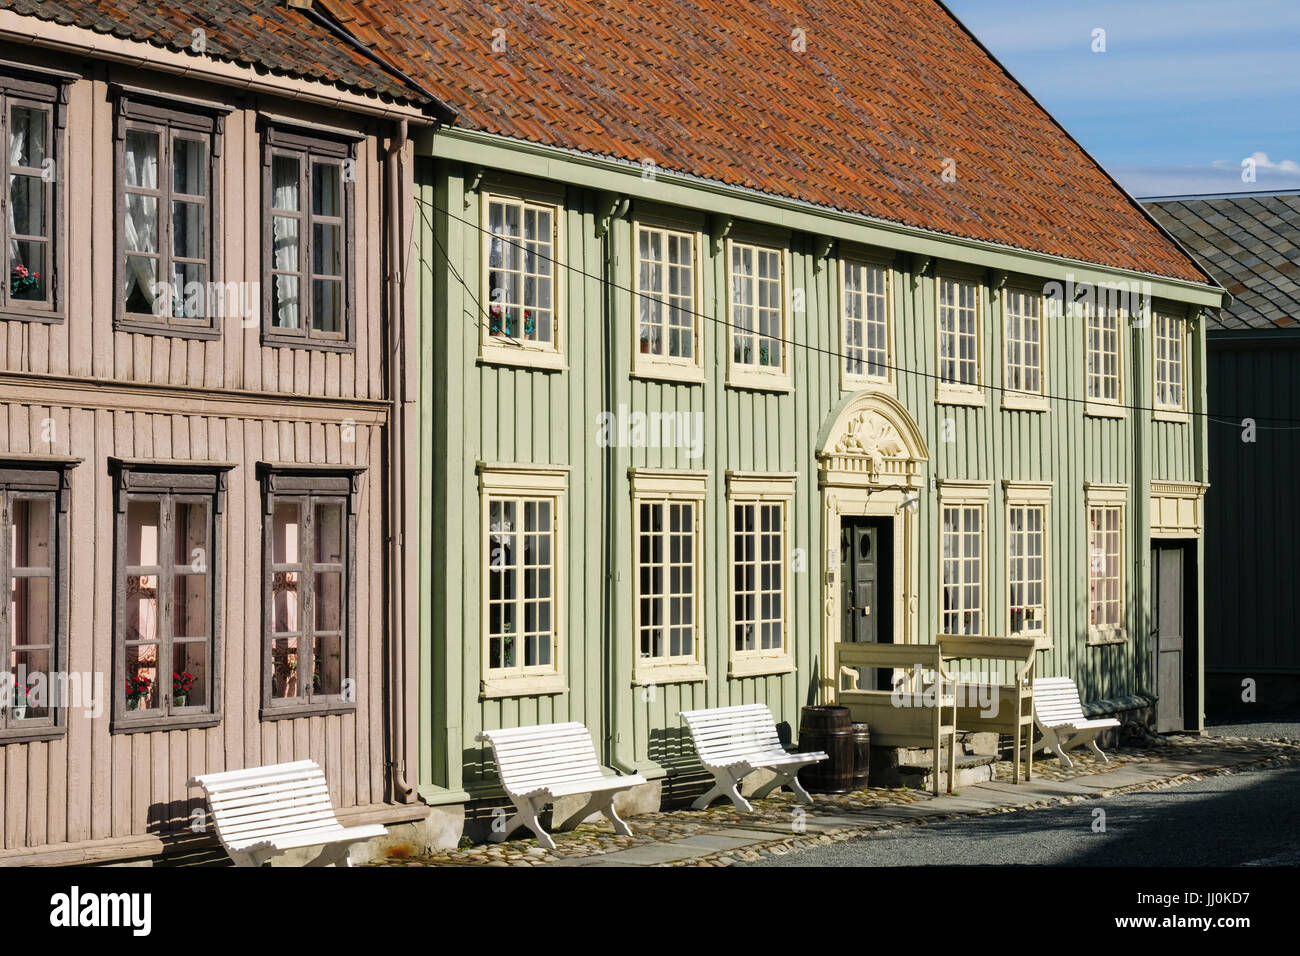 Traditional Norwegian old wooden buildings in Sverresborg Trøndelag Folk Museum. Trondheim, Sør-Trøndelag, Norway, Scandinavia Stock Photo